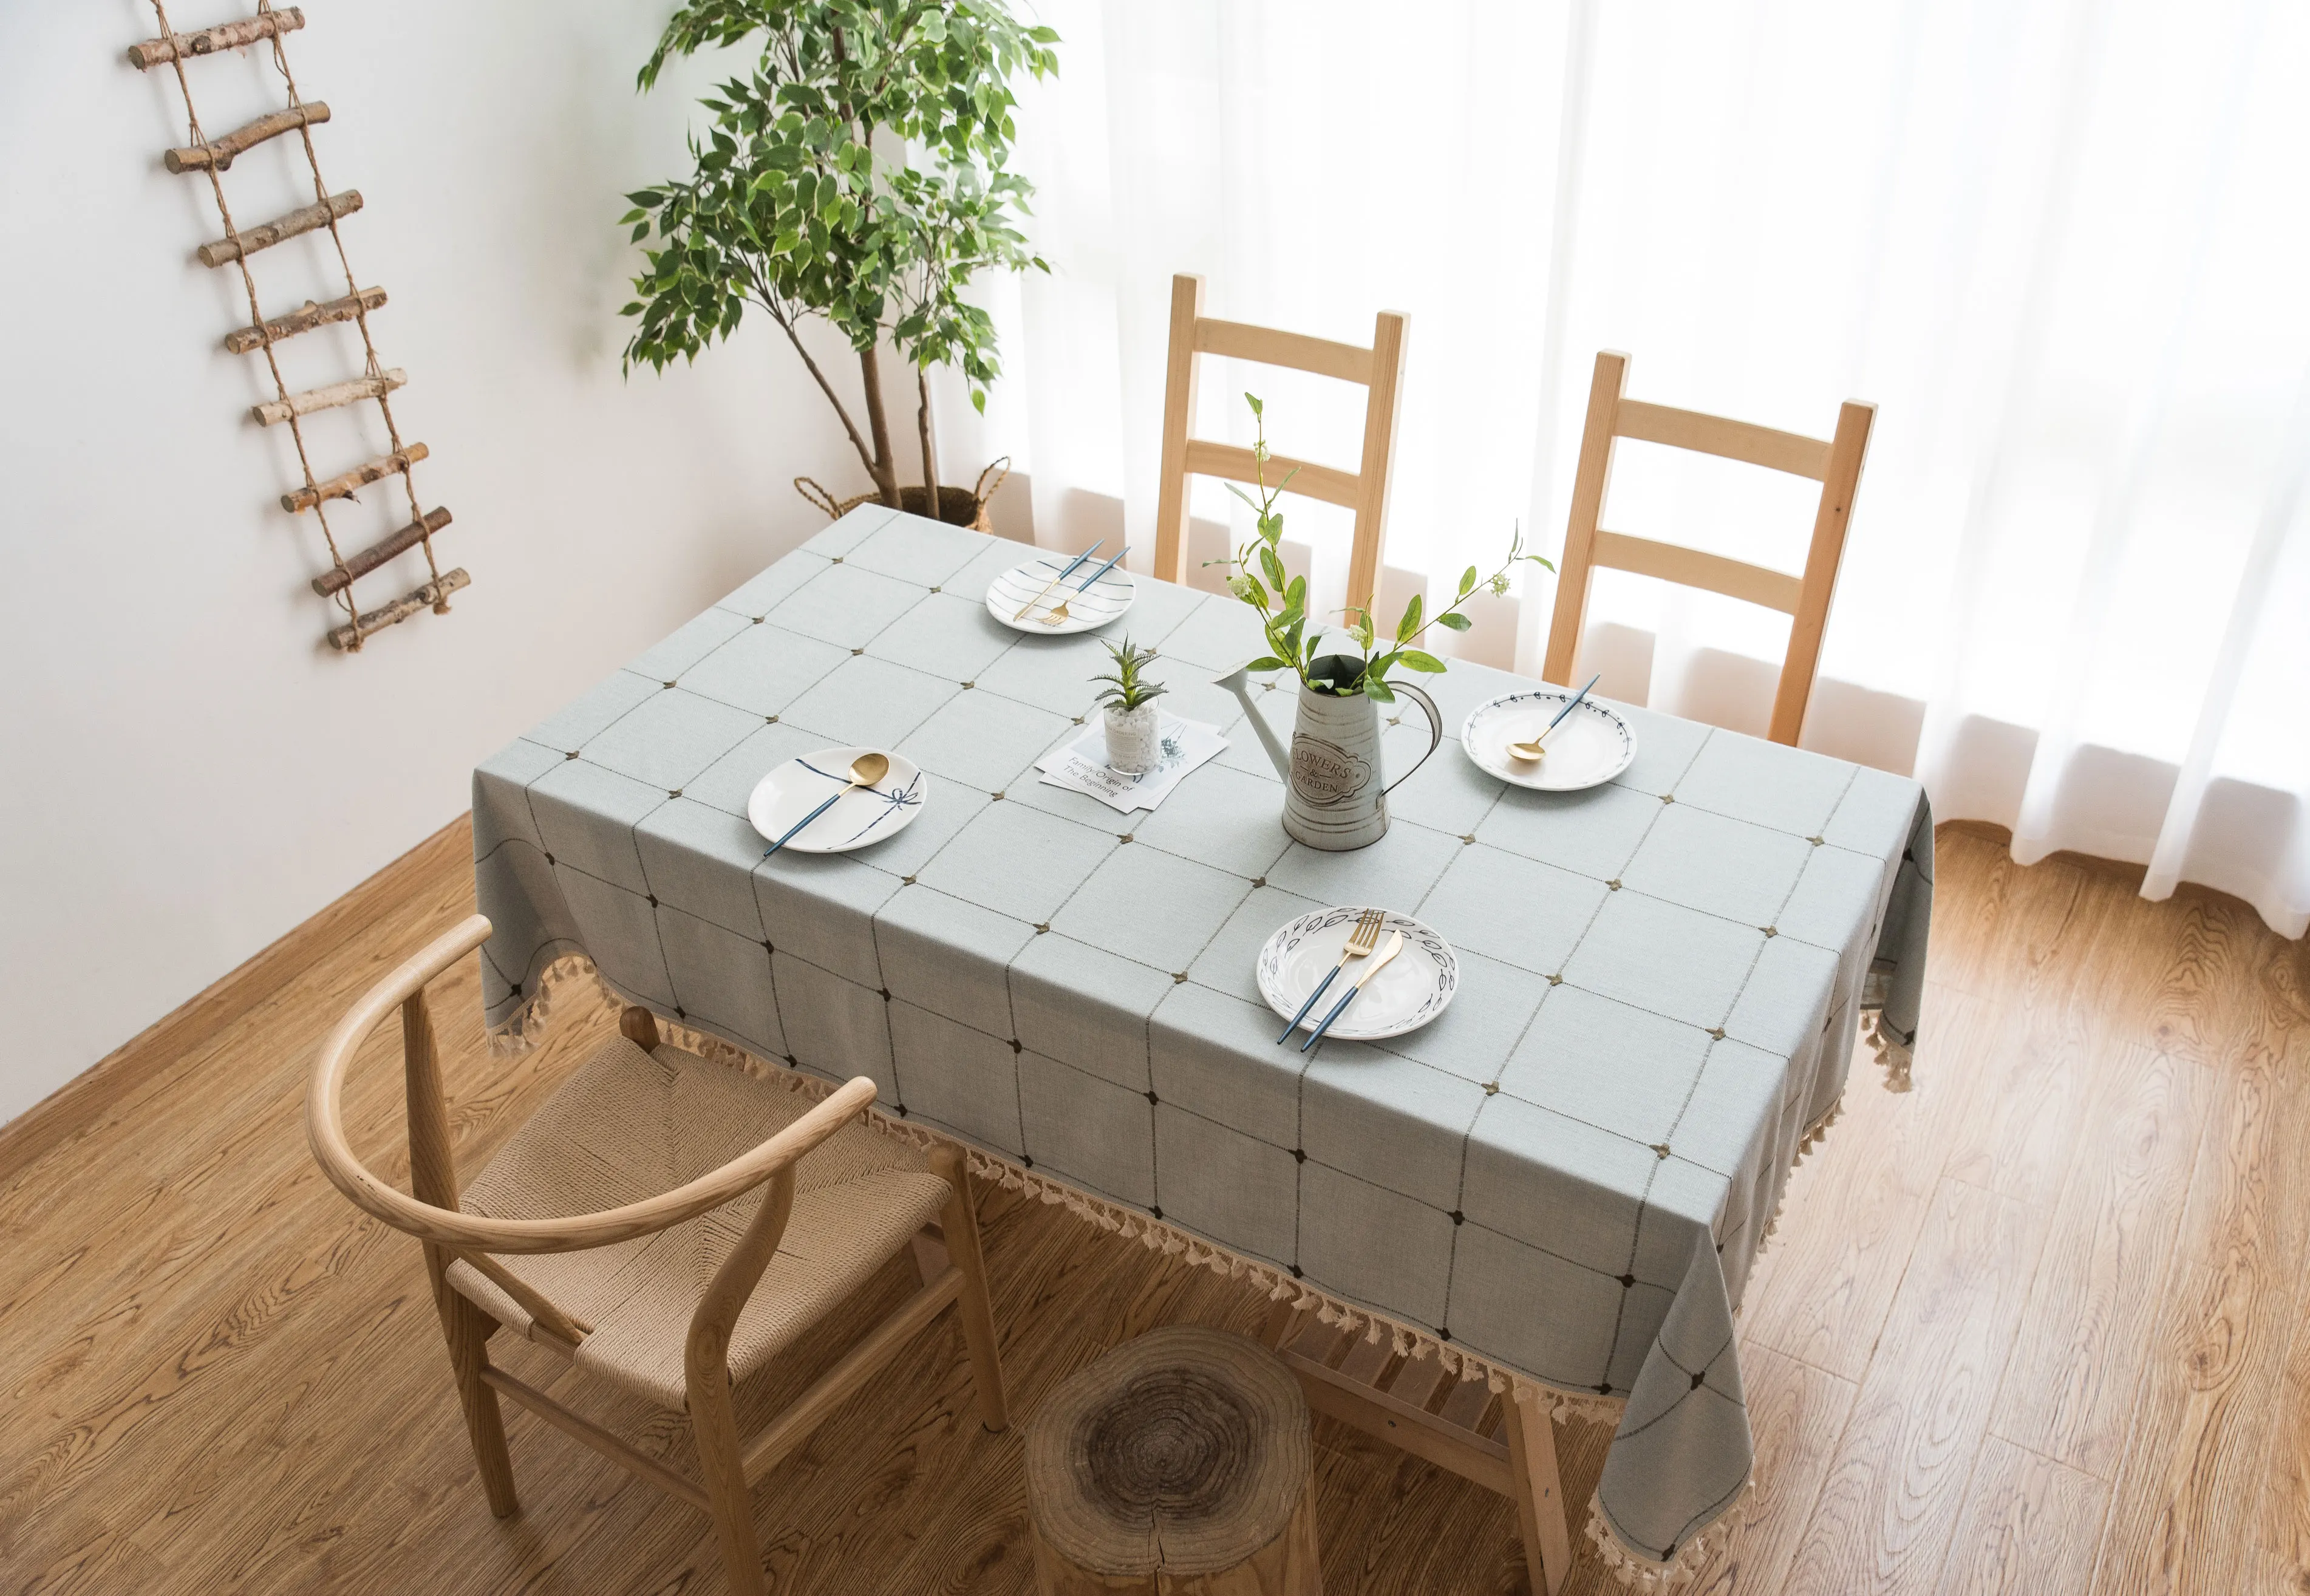 TONGDI скатерть средиземноморская льняная однотонная кружевная вышивка прочное украшение для дома, гостиной, столовой, кухни